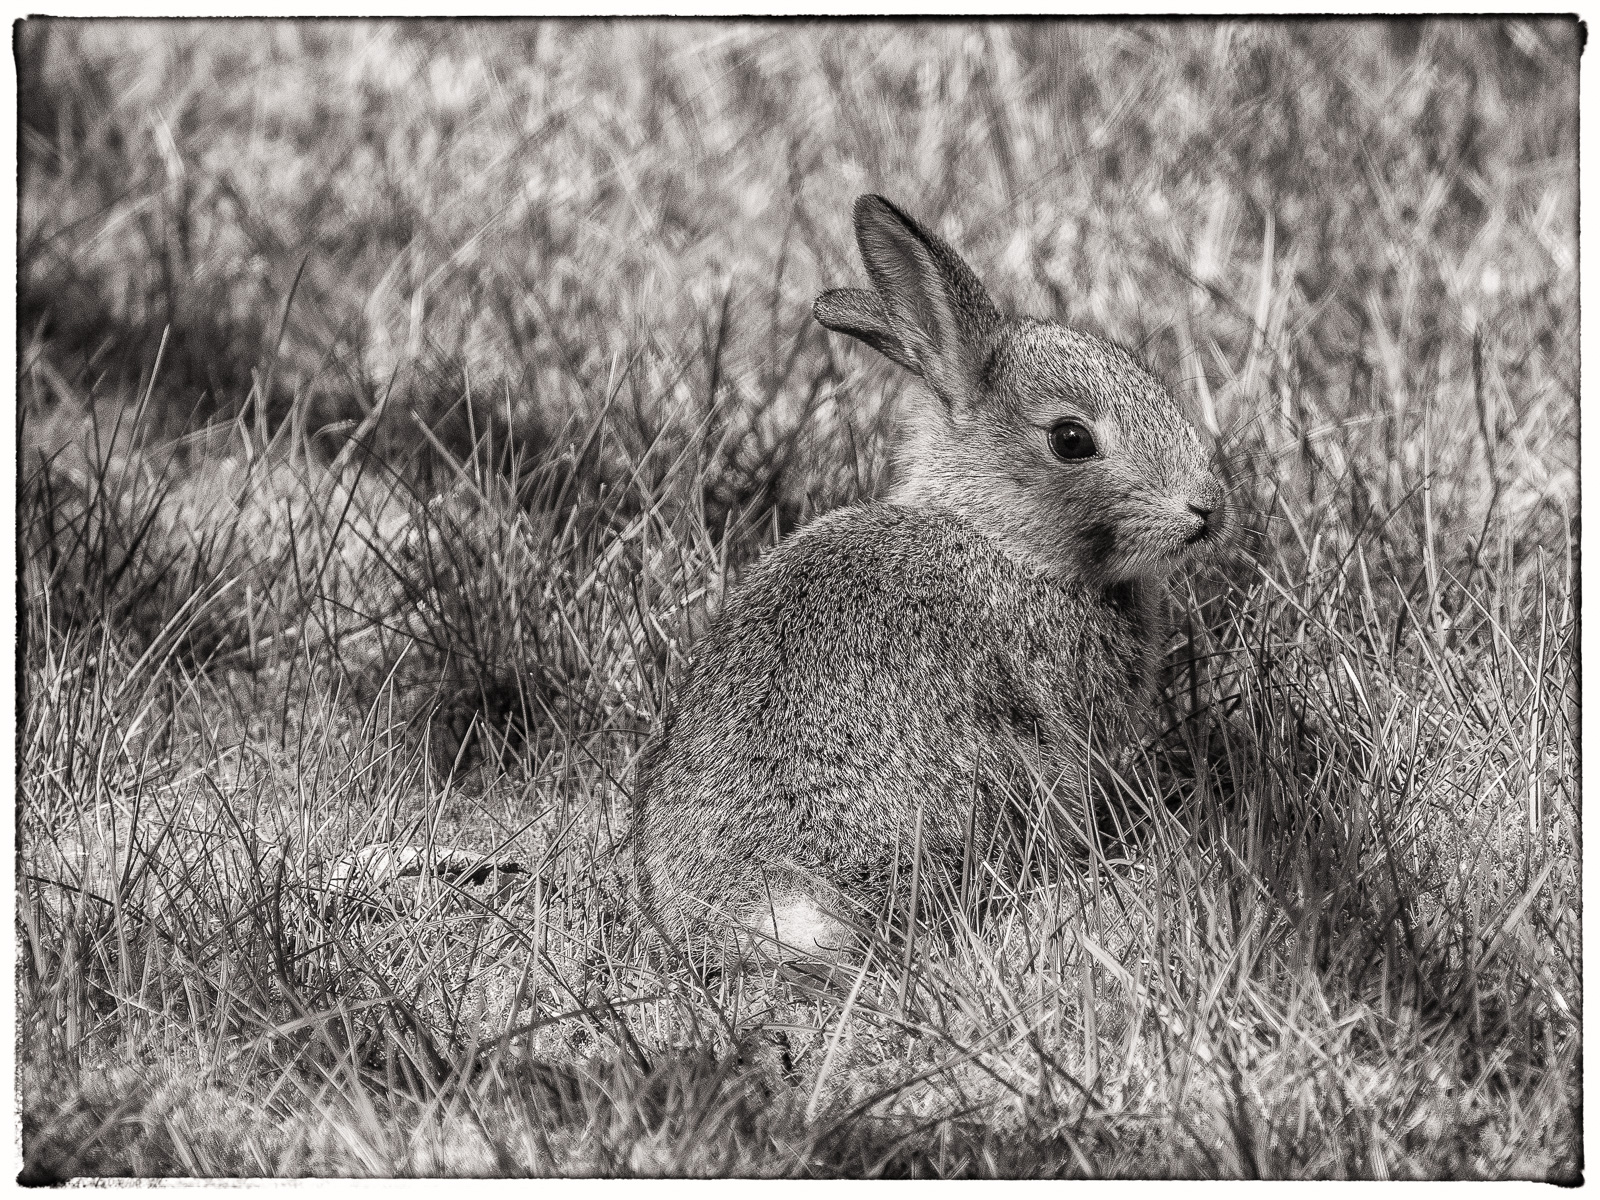 Schwarzweißfoto eines Baby-Kaninchens auf dem Rasen. Sitzend, nach rechts blickend, Ohren schräg